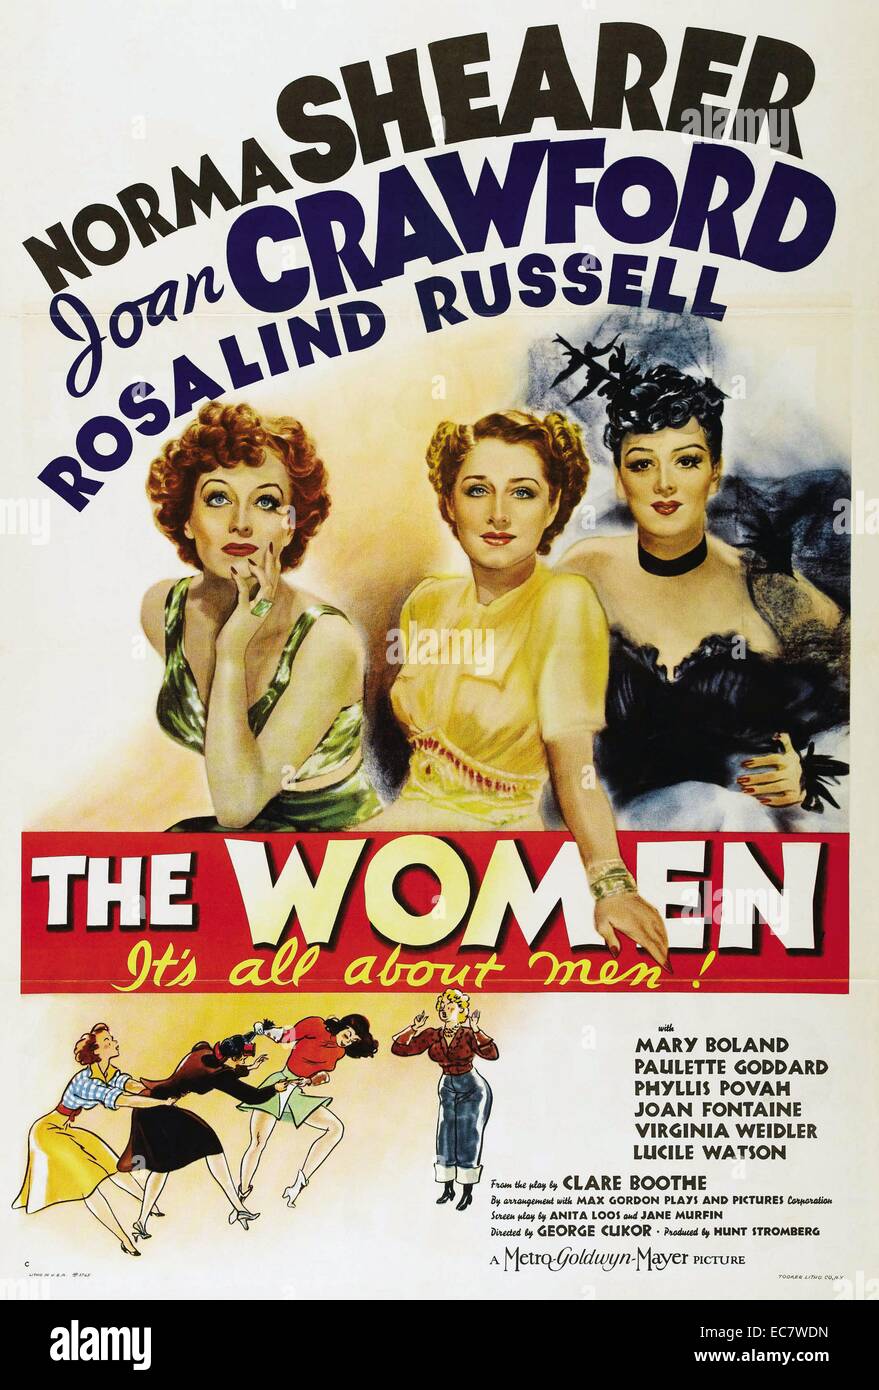 Die Frauen ist ein 1939 amerikanische Komödie - Film unter der Regie von George Cukor. Der Film ist von Clare Boothe Luce's Play mit dem gleichen Namen und stars Norma Shearer, Joan Crawford, Rosalind Russell, Paulette Goddard und Joan Fontaine. Stockfoto